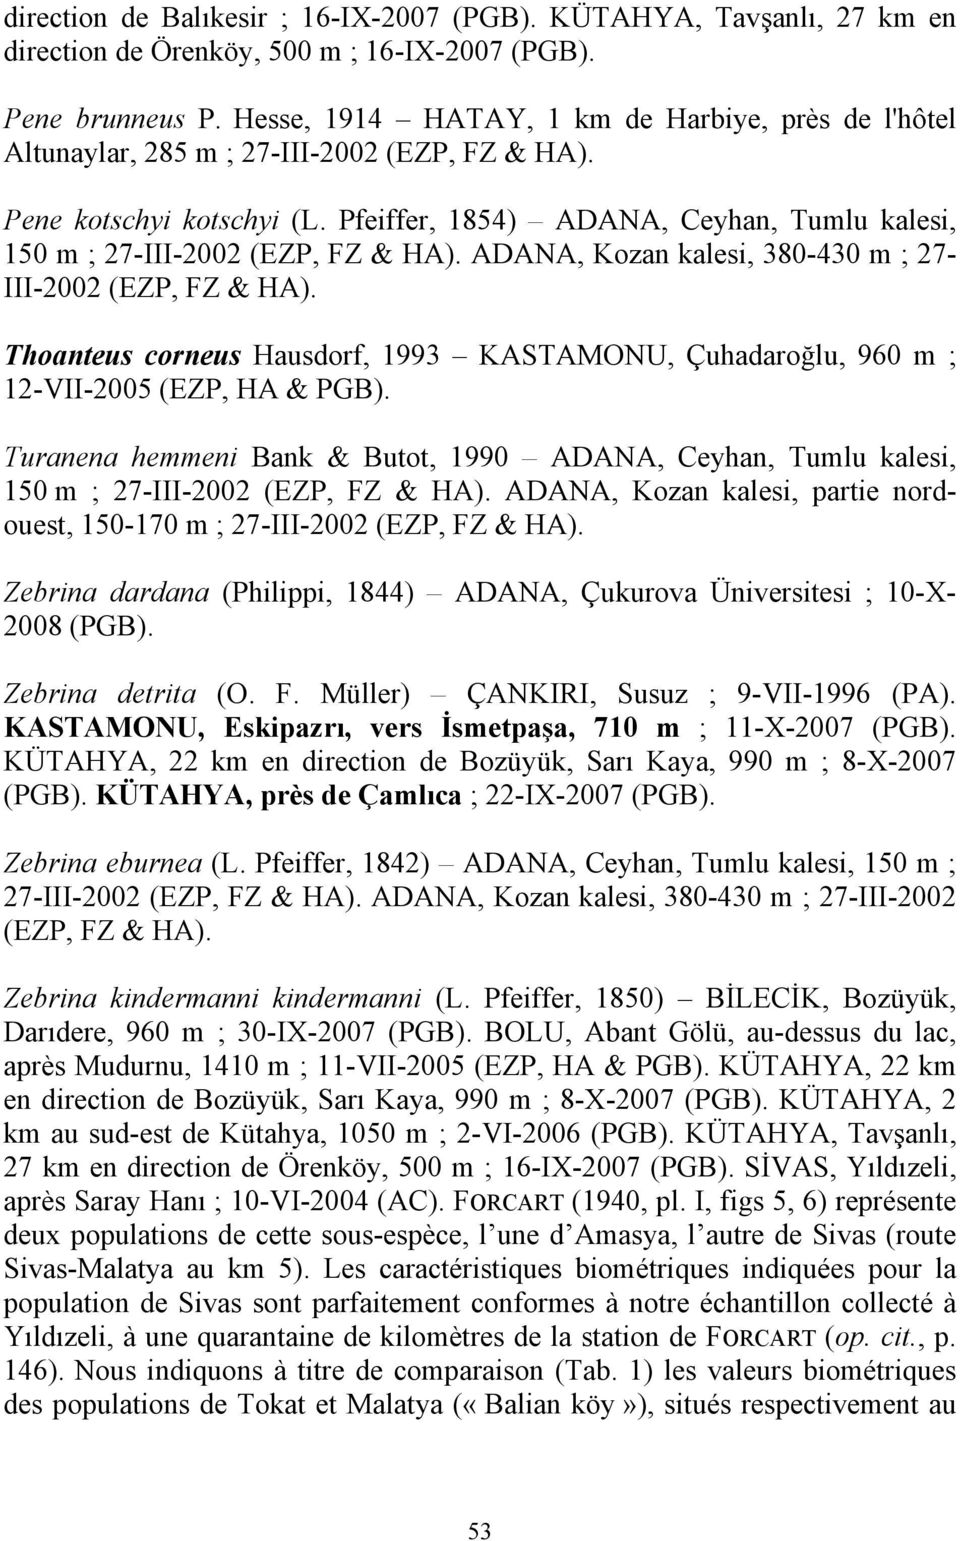 Pfeiffer, 1854) ADANA, Ceyhan, Tumlu kalesi, 150 m ; 27-III-2002 (EZP, FZ & HA). ADANA, Kozan kalesi, 380-430 m ; 27- III-2002 (EZP, FZ & HA).